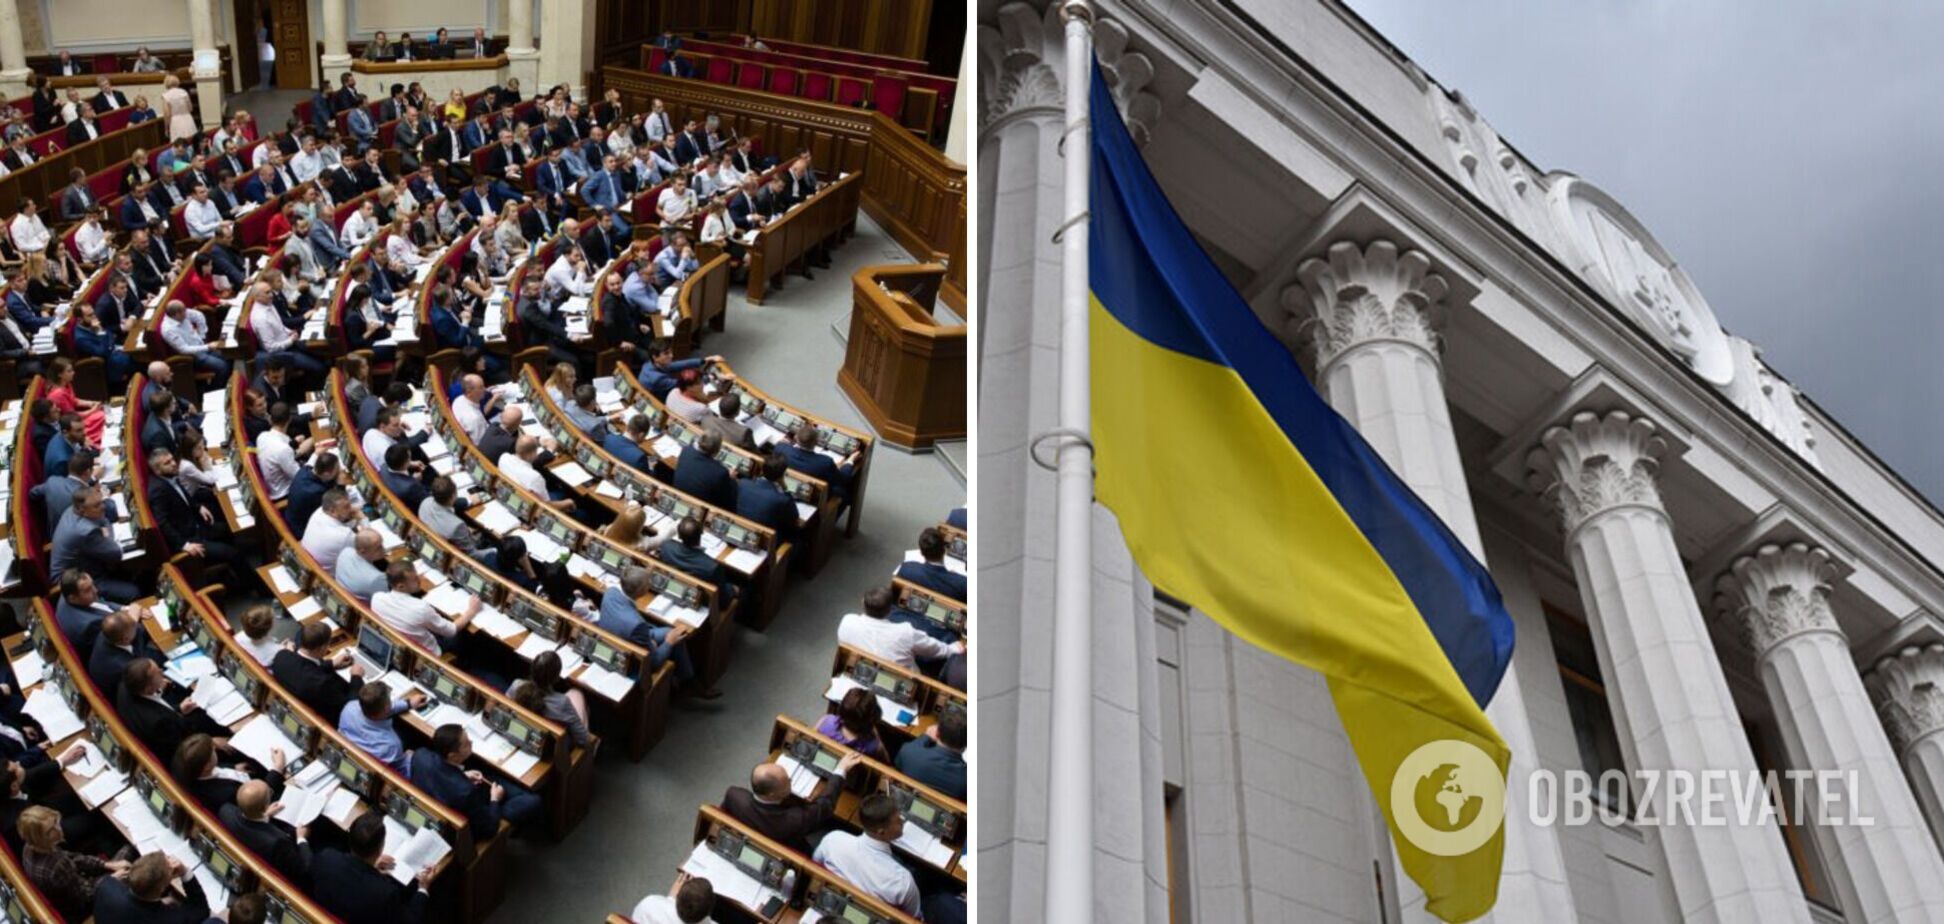 Україна закликала партнерів консолідувати зусилля для деокупації Криму і розірвала договори з РФ щодо Азовського моря